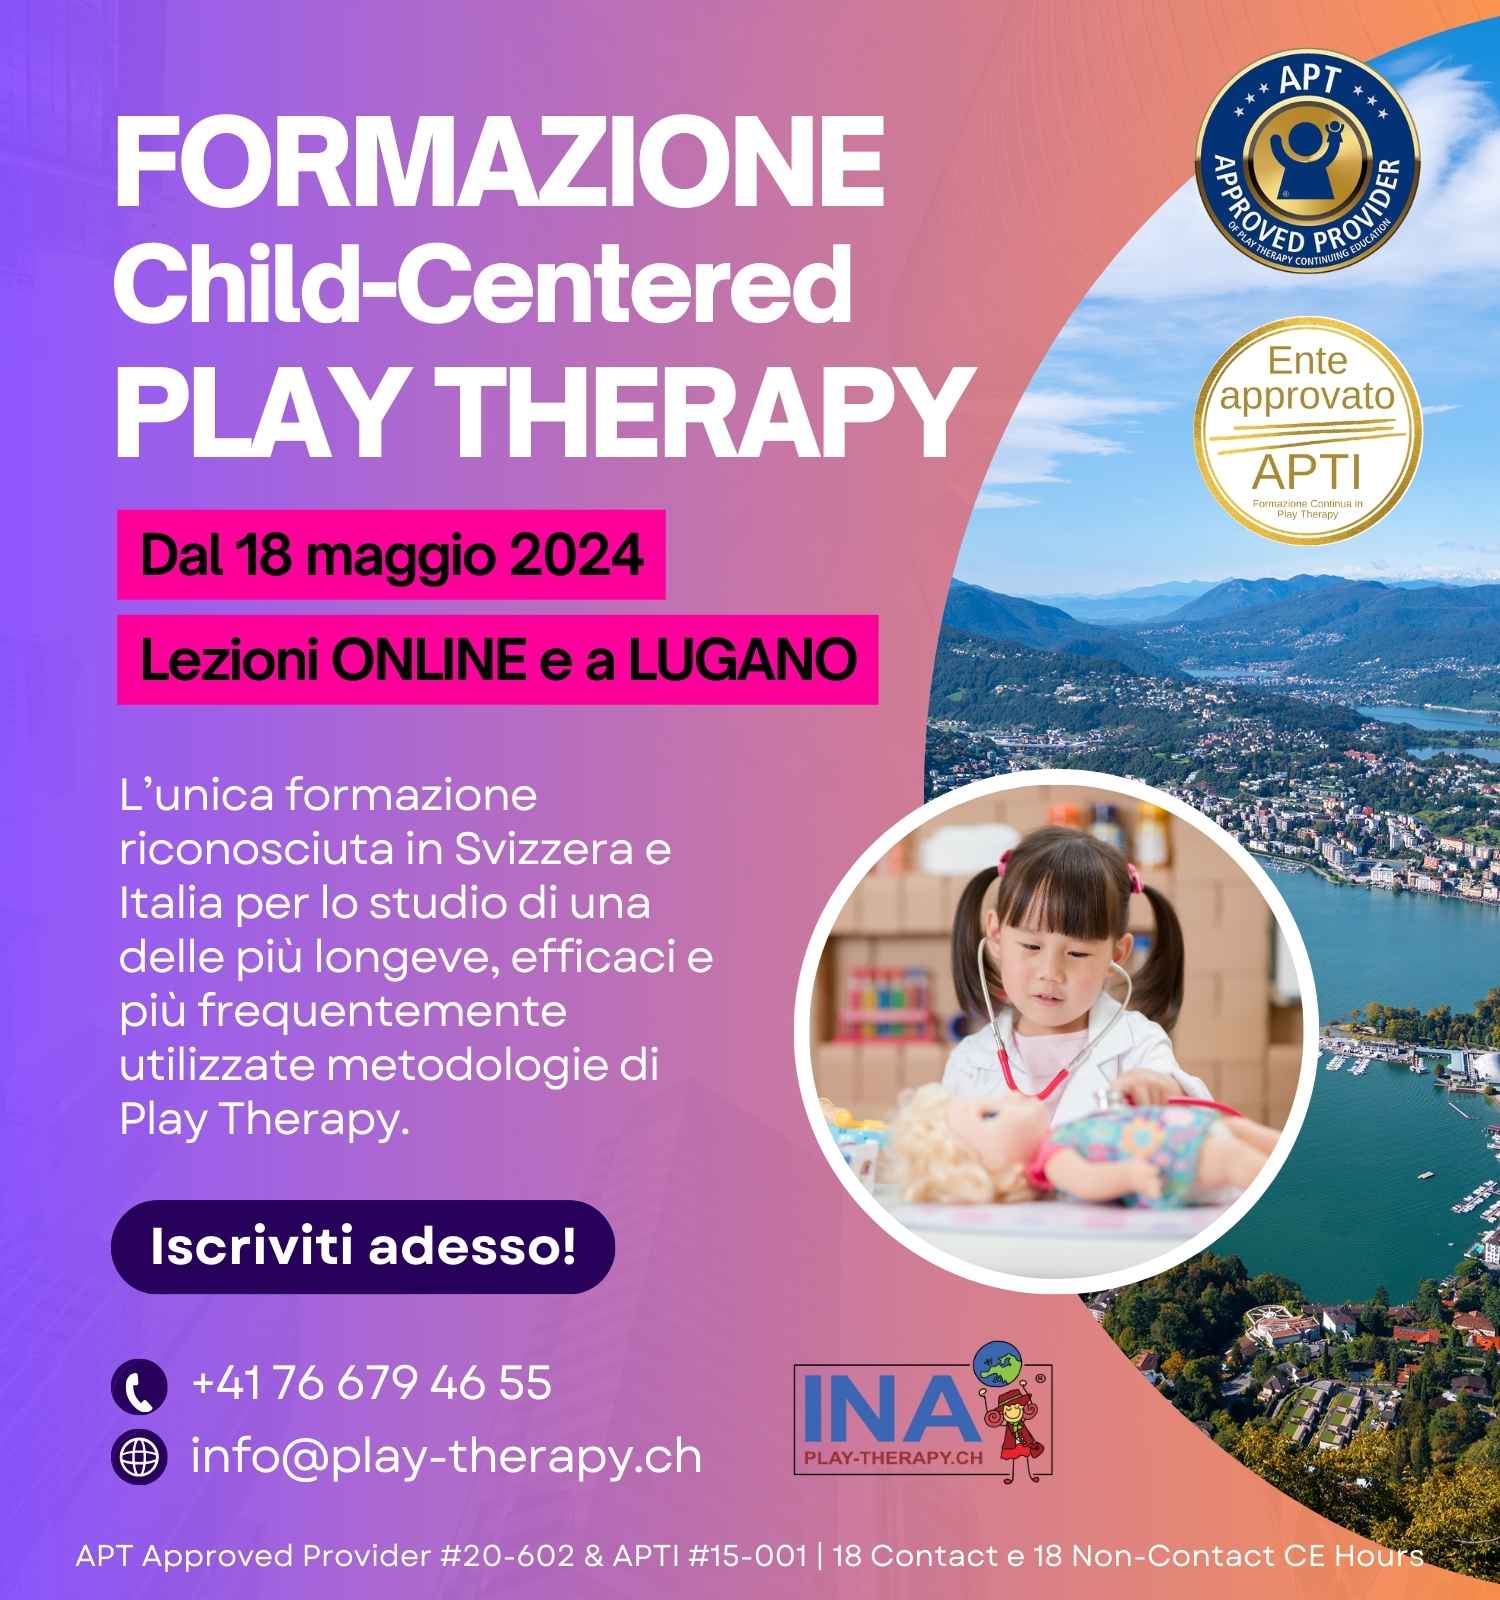 formazione child-centered play therapy a lugano